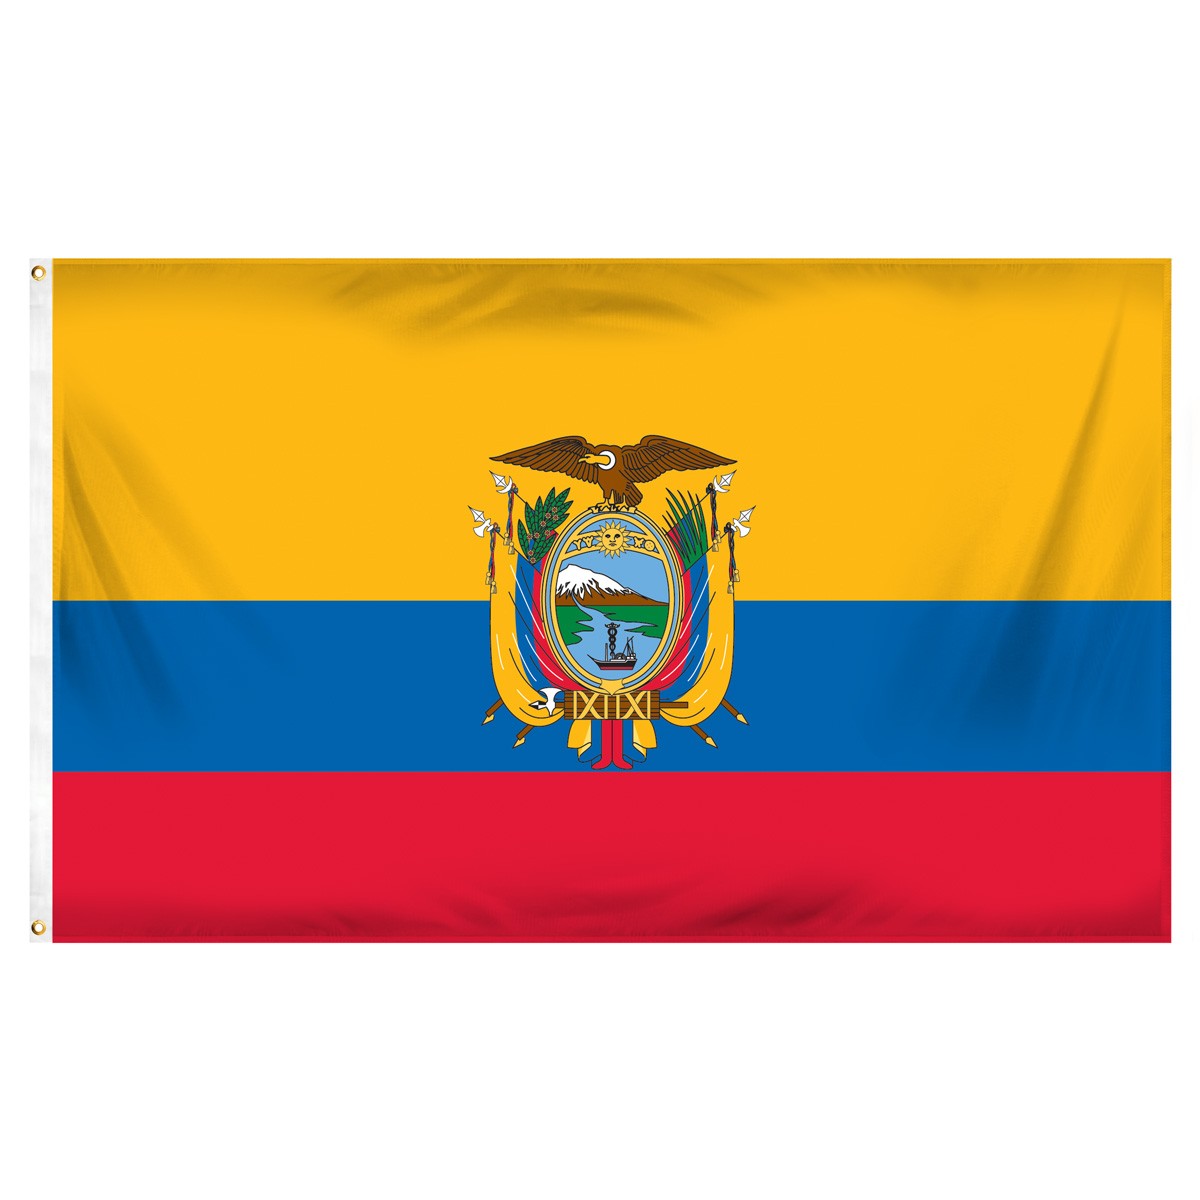 Ecuador Horizontal Streamers and Flags